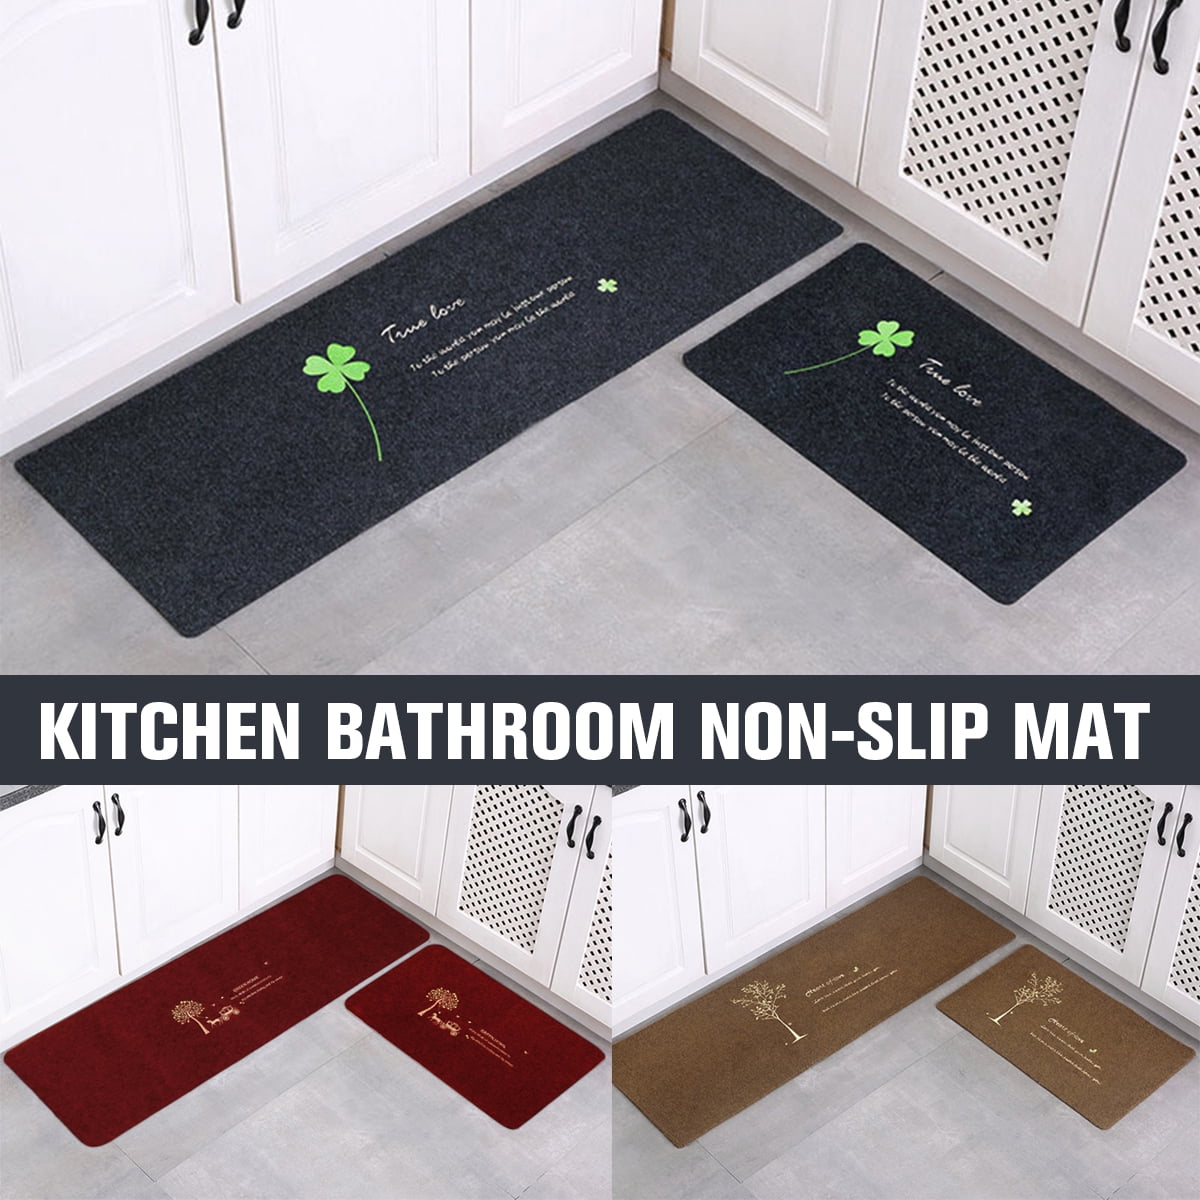 1/2PCS Non Slip Area Rug Kitchen Floor Mat Runner Door Bedroom Rug Carpet Home